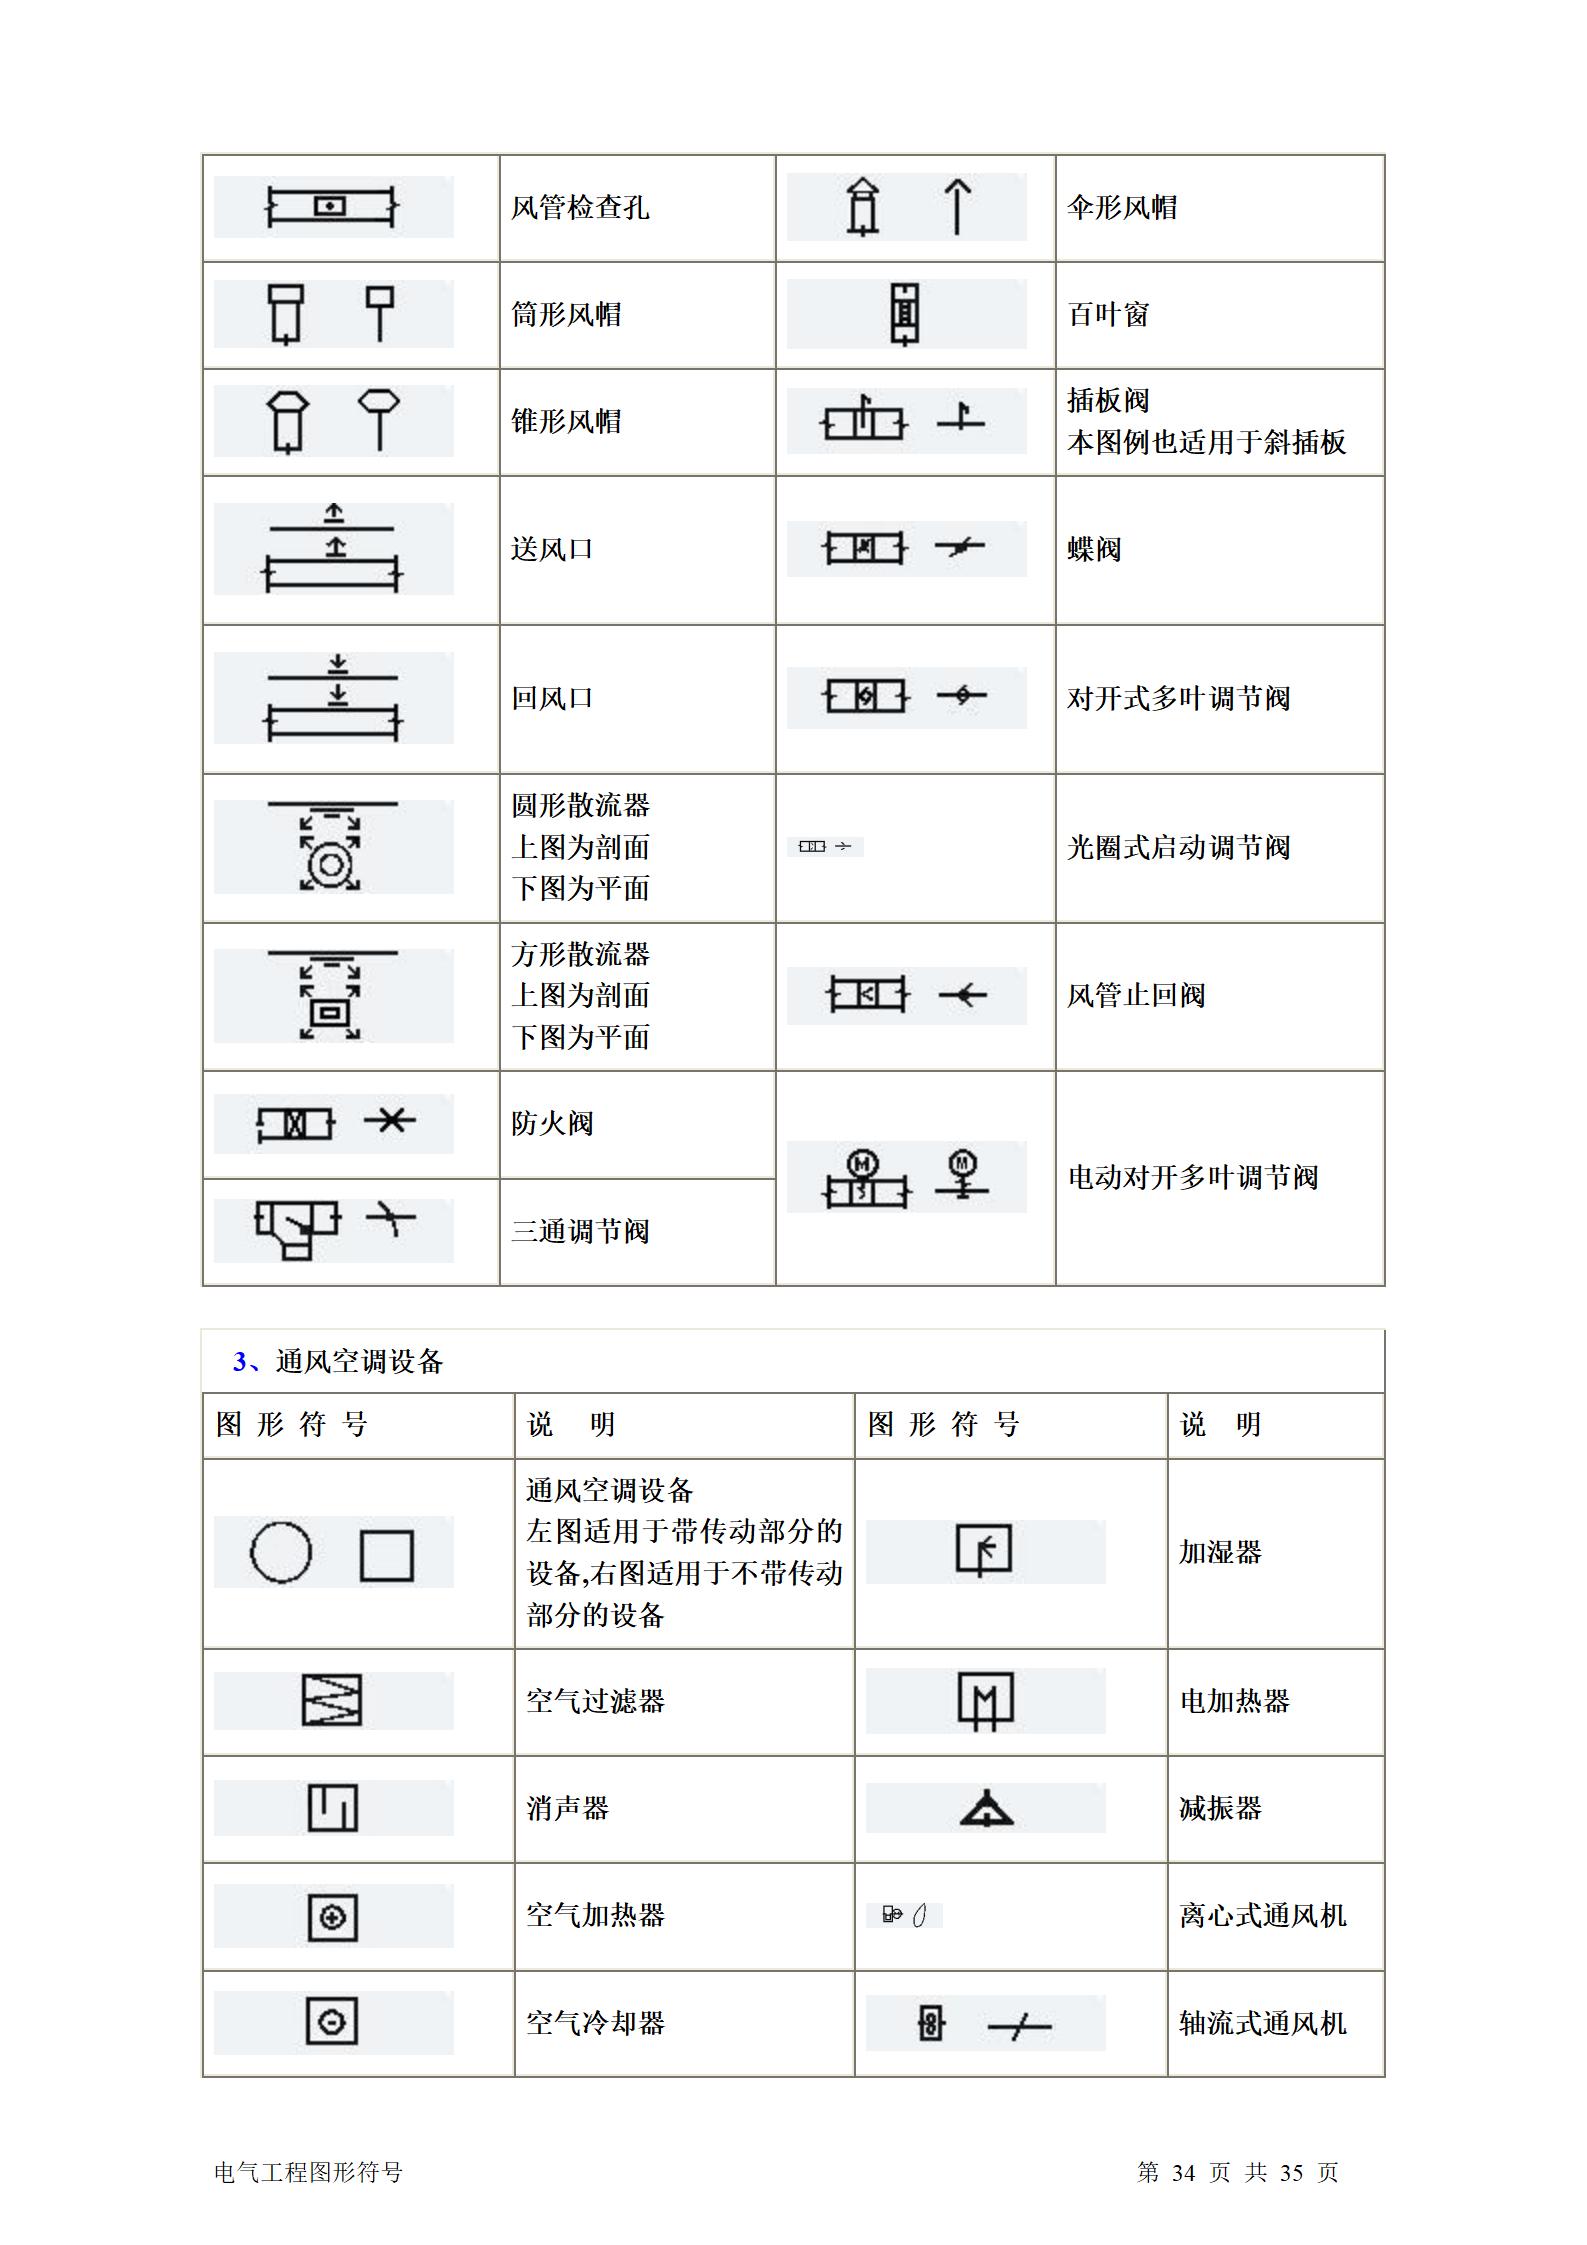 建筑电气、水暖、通风工程图形符号大全word版插图(34)